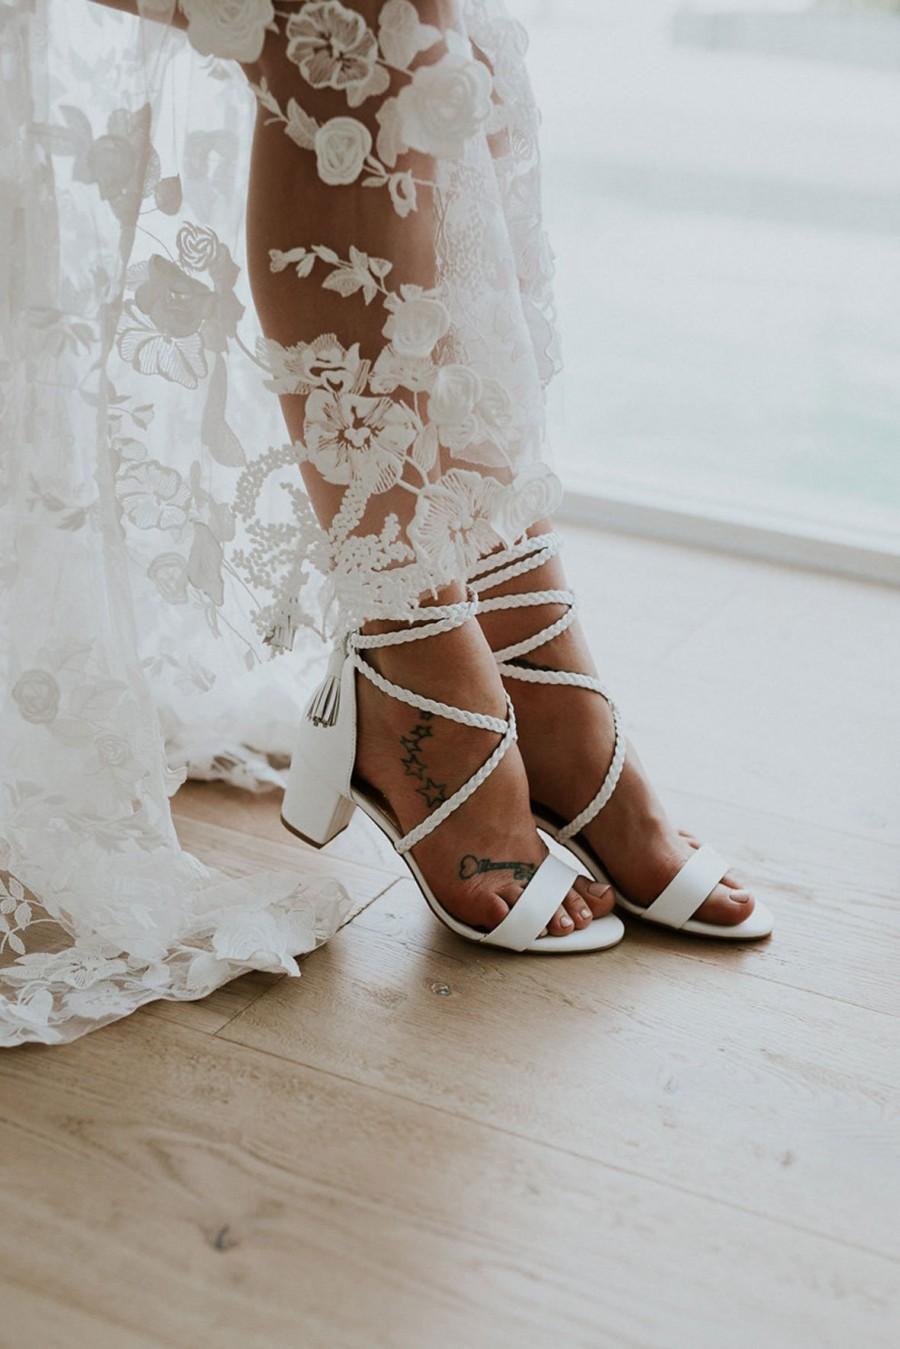 Buy > low heel for wedding > in stock